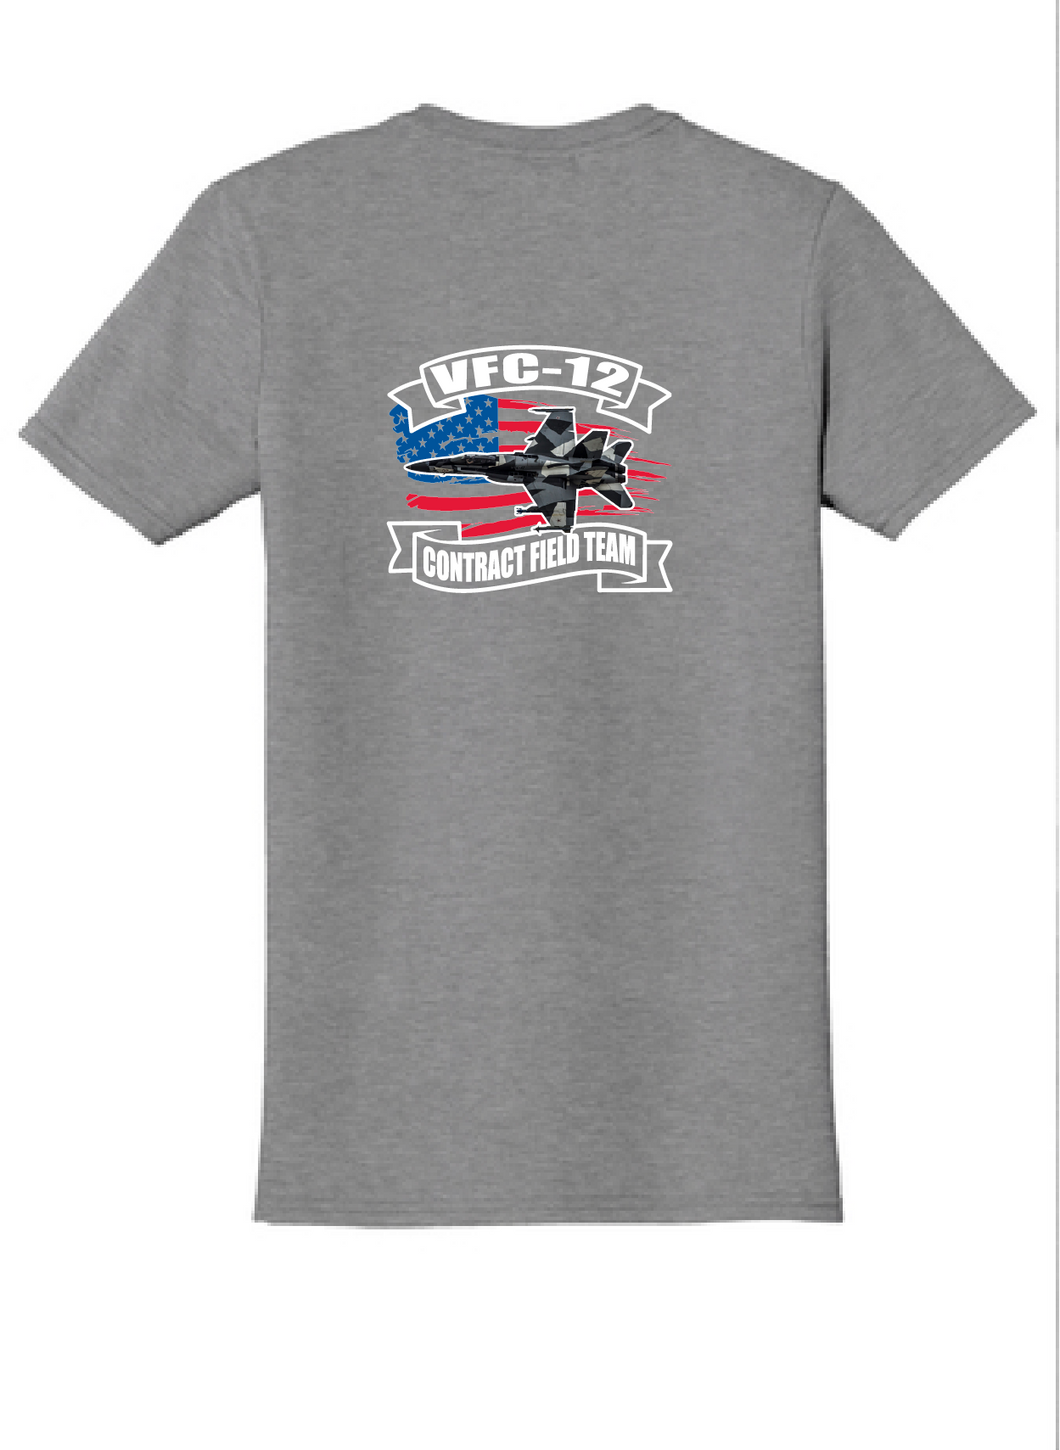 Softstyle Short Sleeve T-Shirt / Sport Gray / VFC-12 - Fidgety